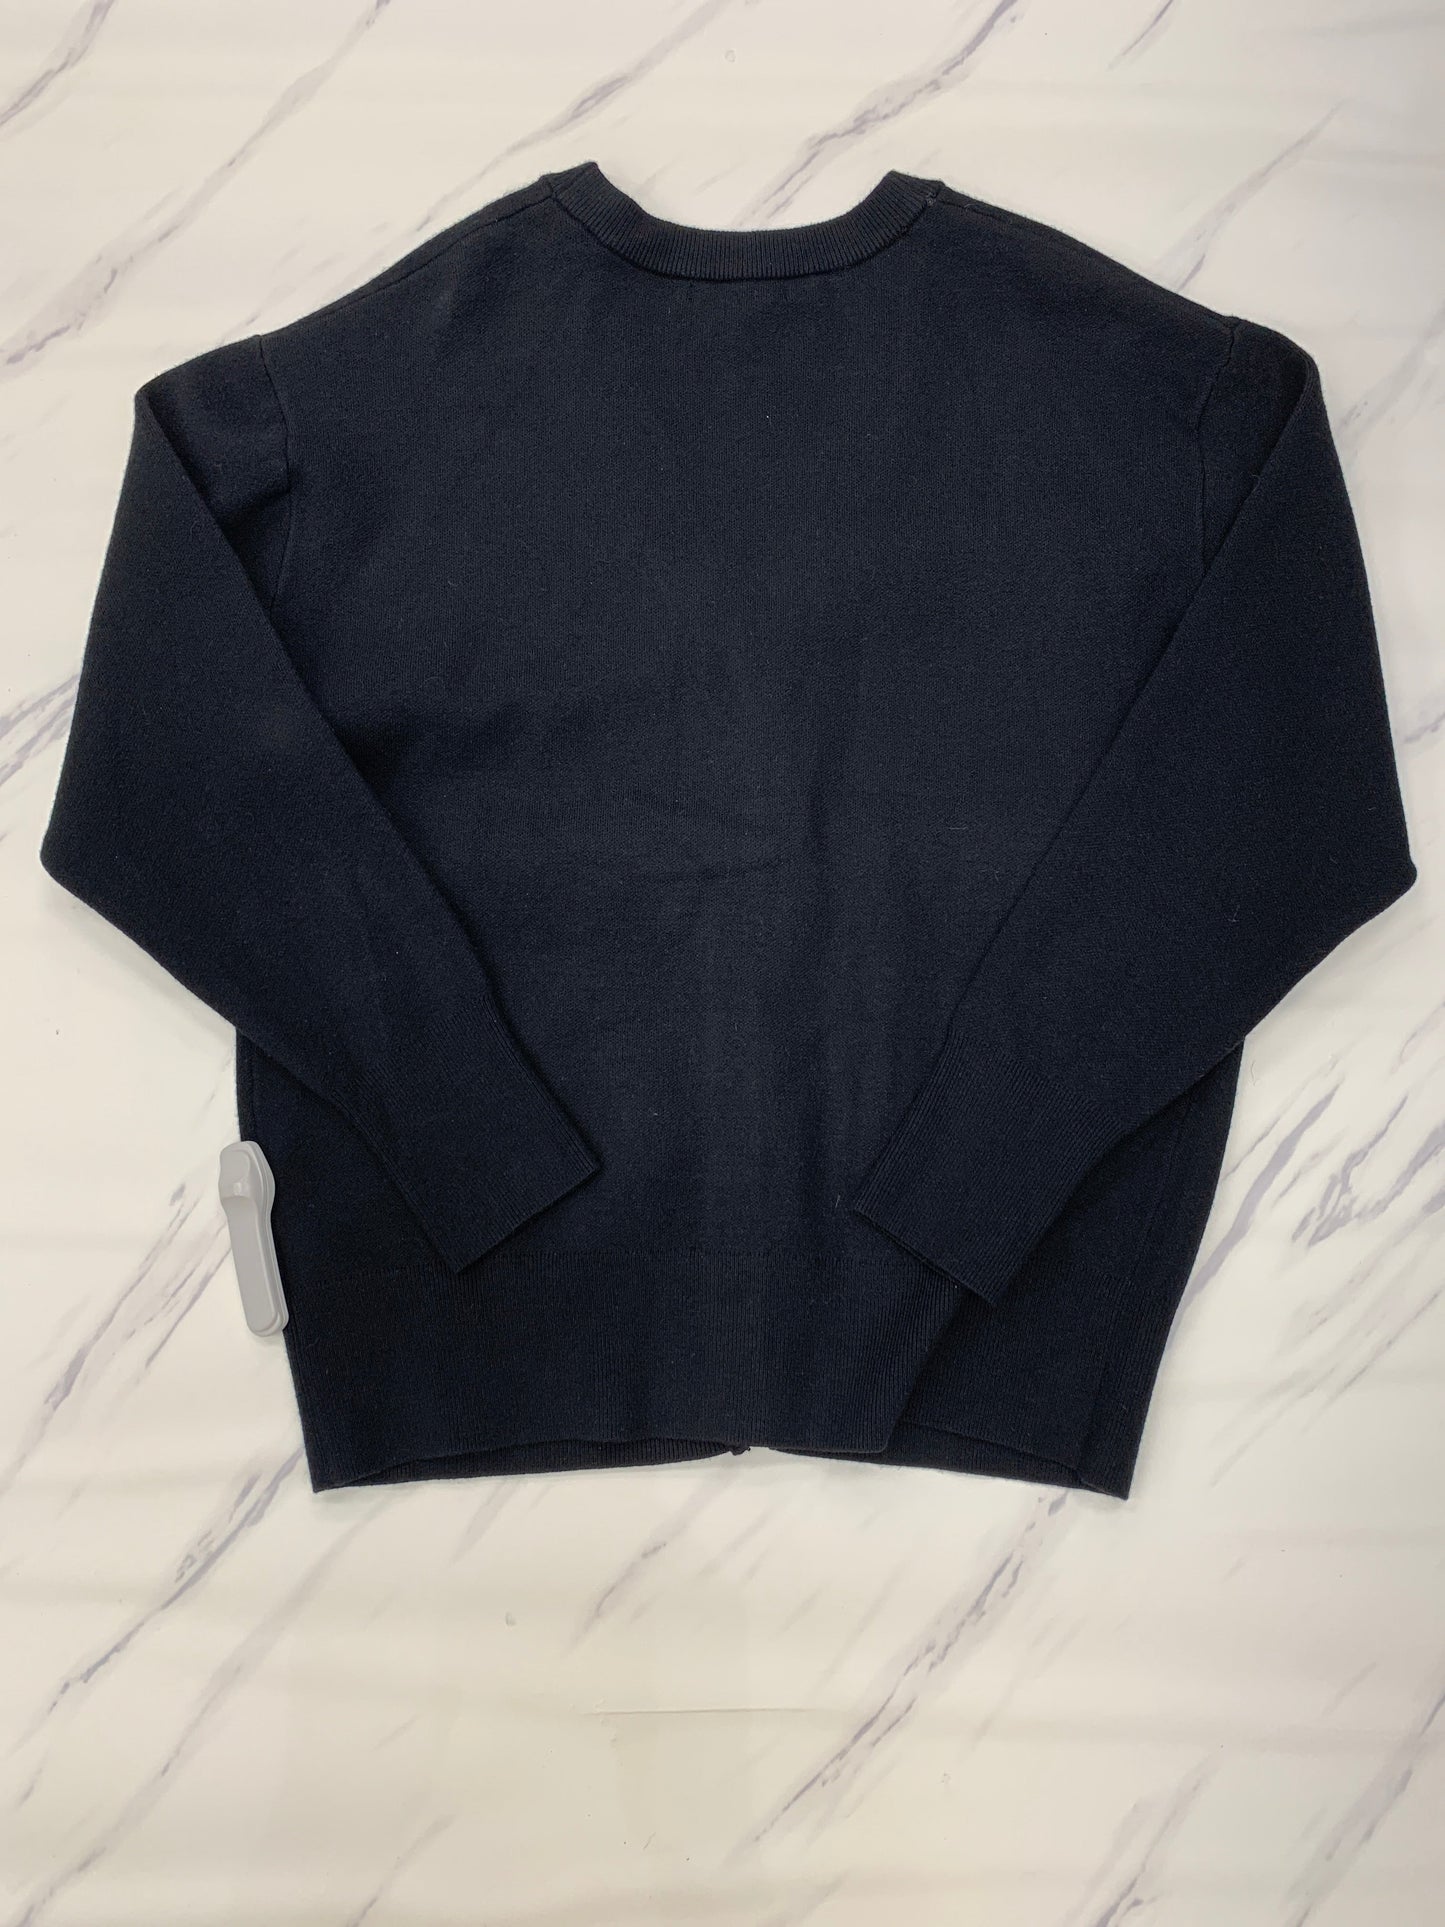 Black Sweater Cardigan Designer T Tahari, Size M